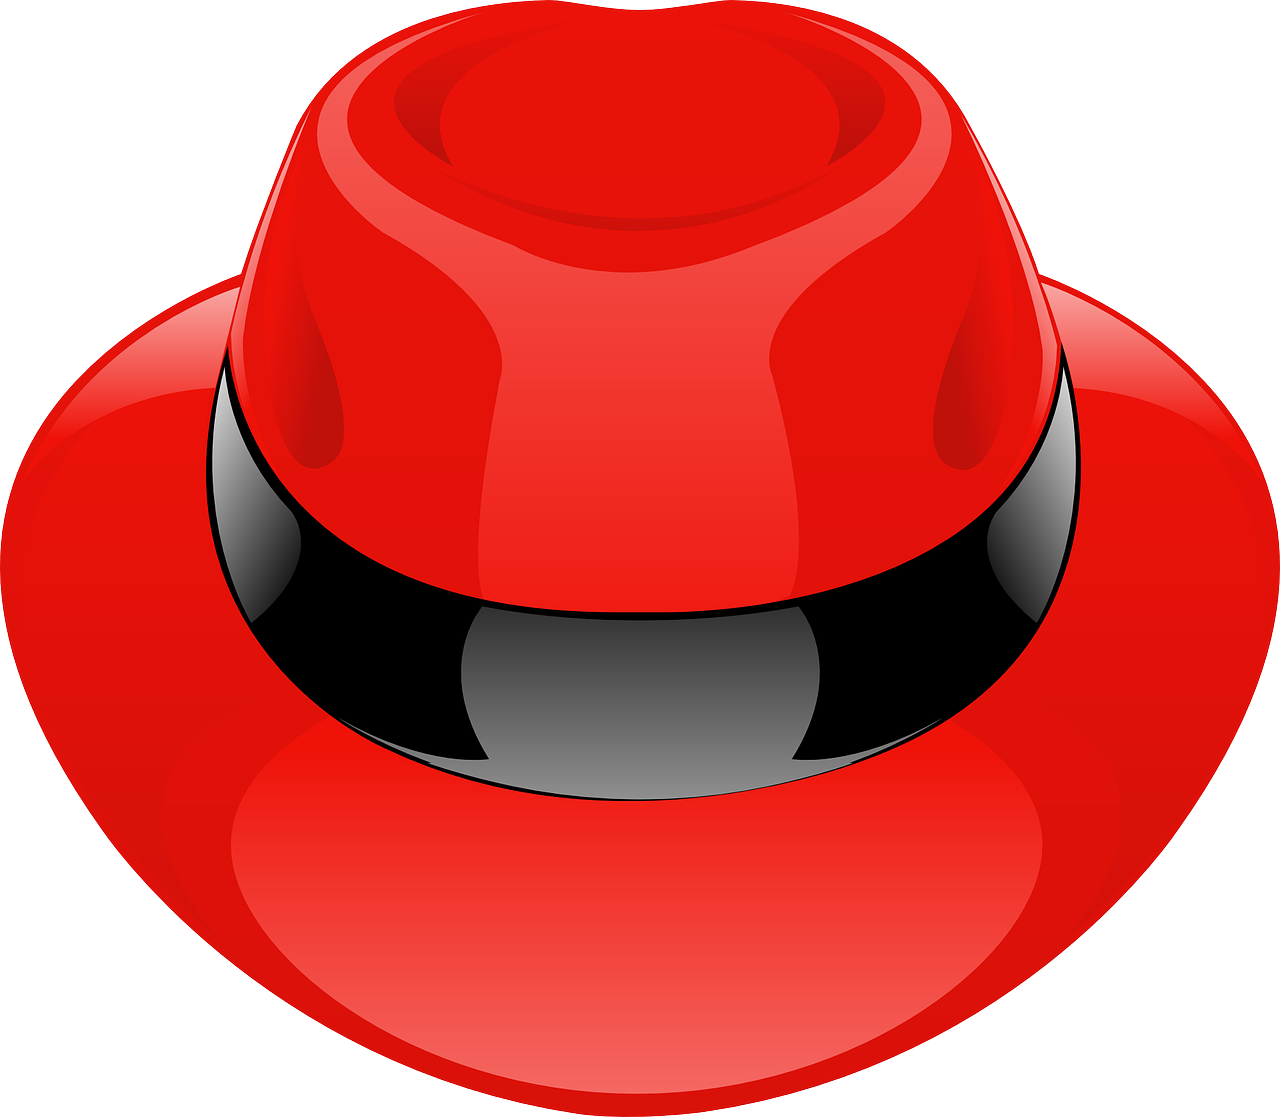 Einen Schicken Hut - Red Hat Icon (860x750)